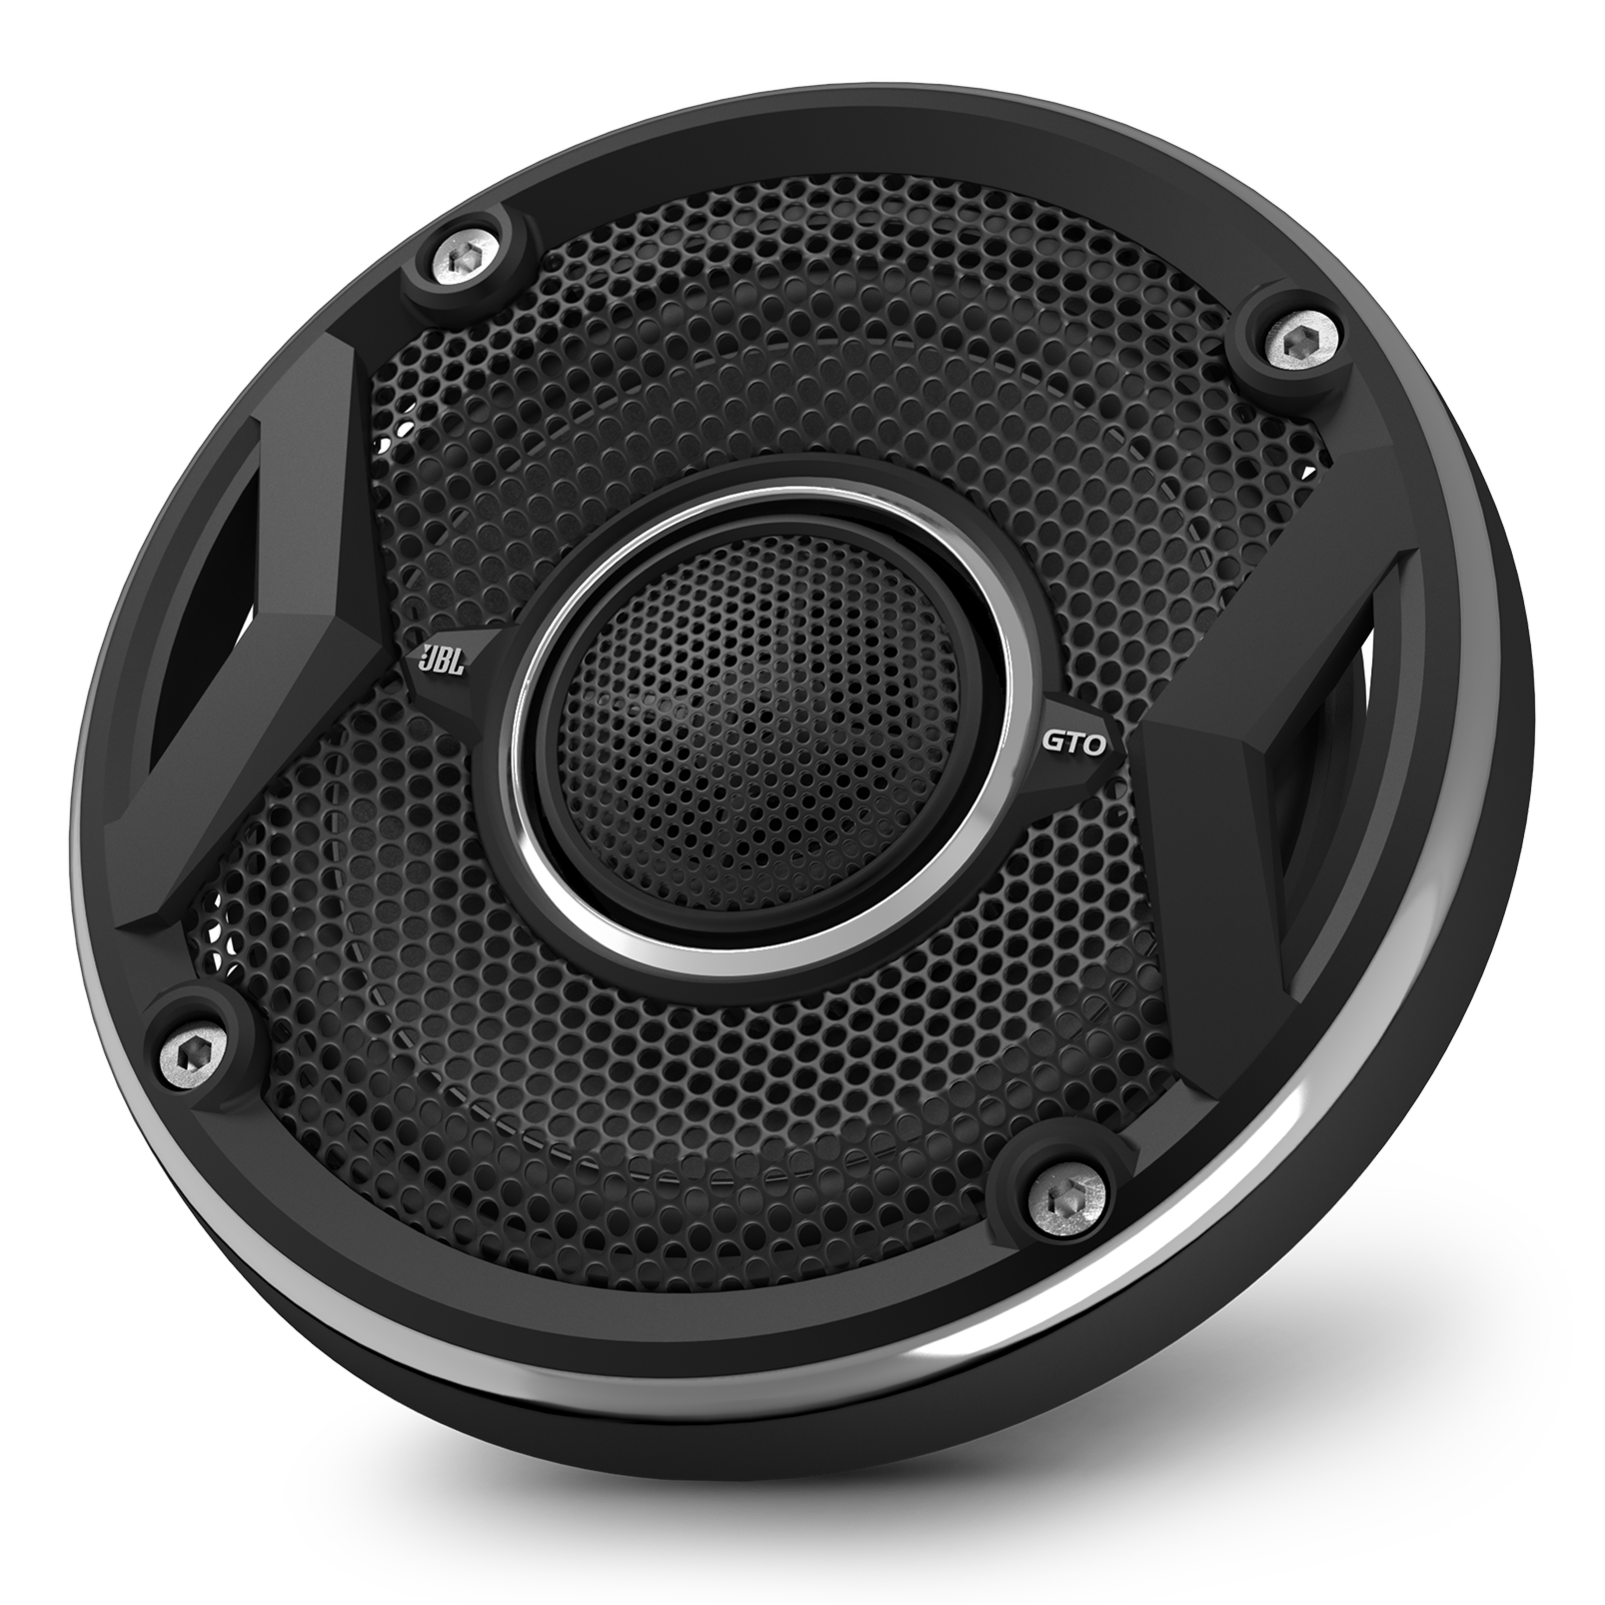 JBL GTO 9 Series 105W 4-Inch Coaxial Speakers-Pair-Black